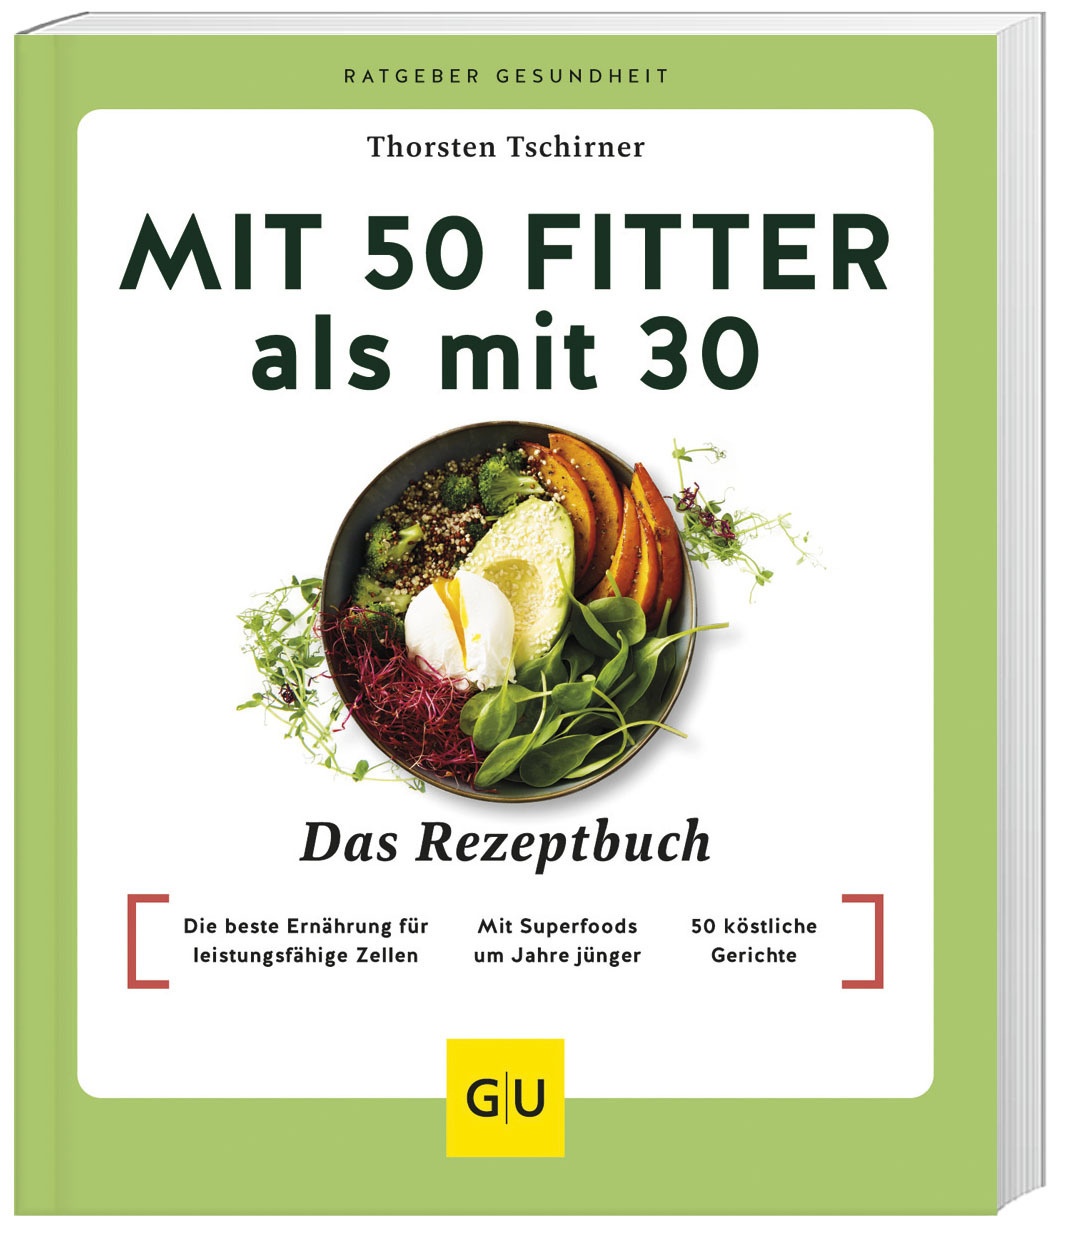 Mit 50 Fitter Als Mit 30 - Das Rezeptbuch - Thorsten Tschirner  Kartoniert (TB)